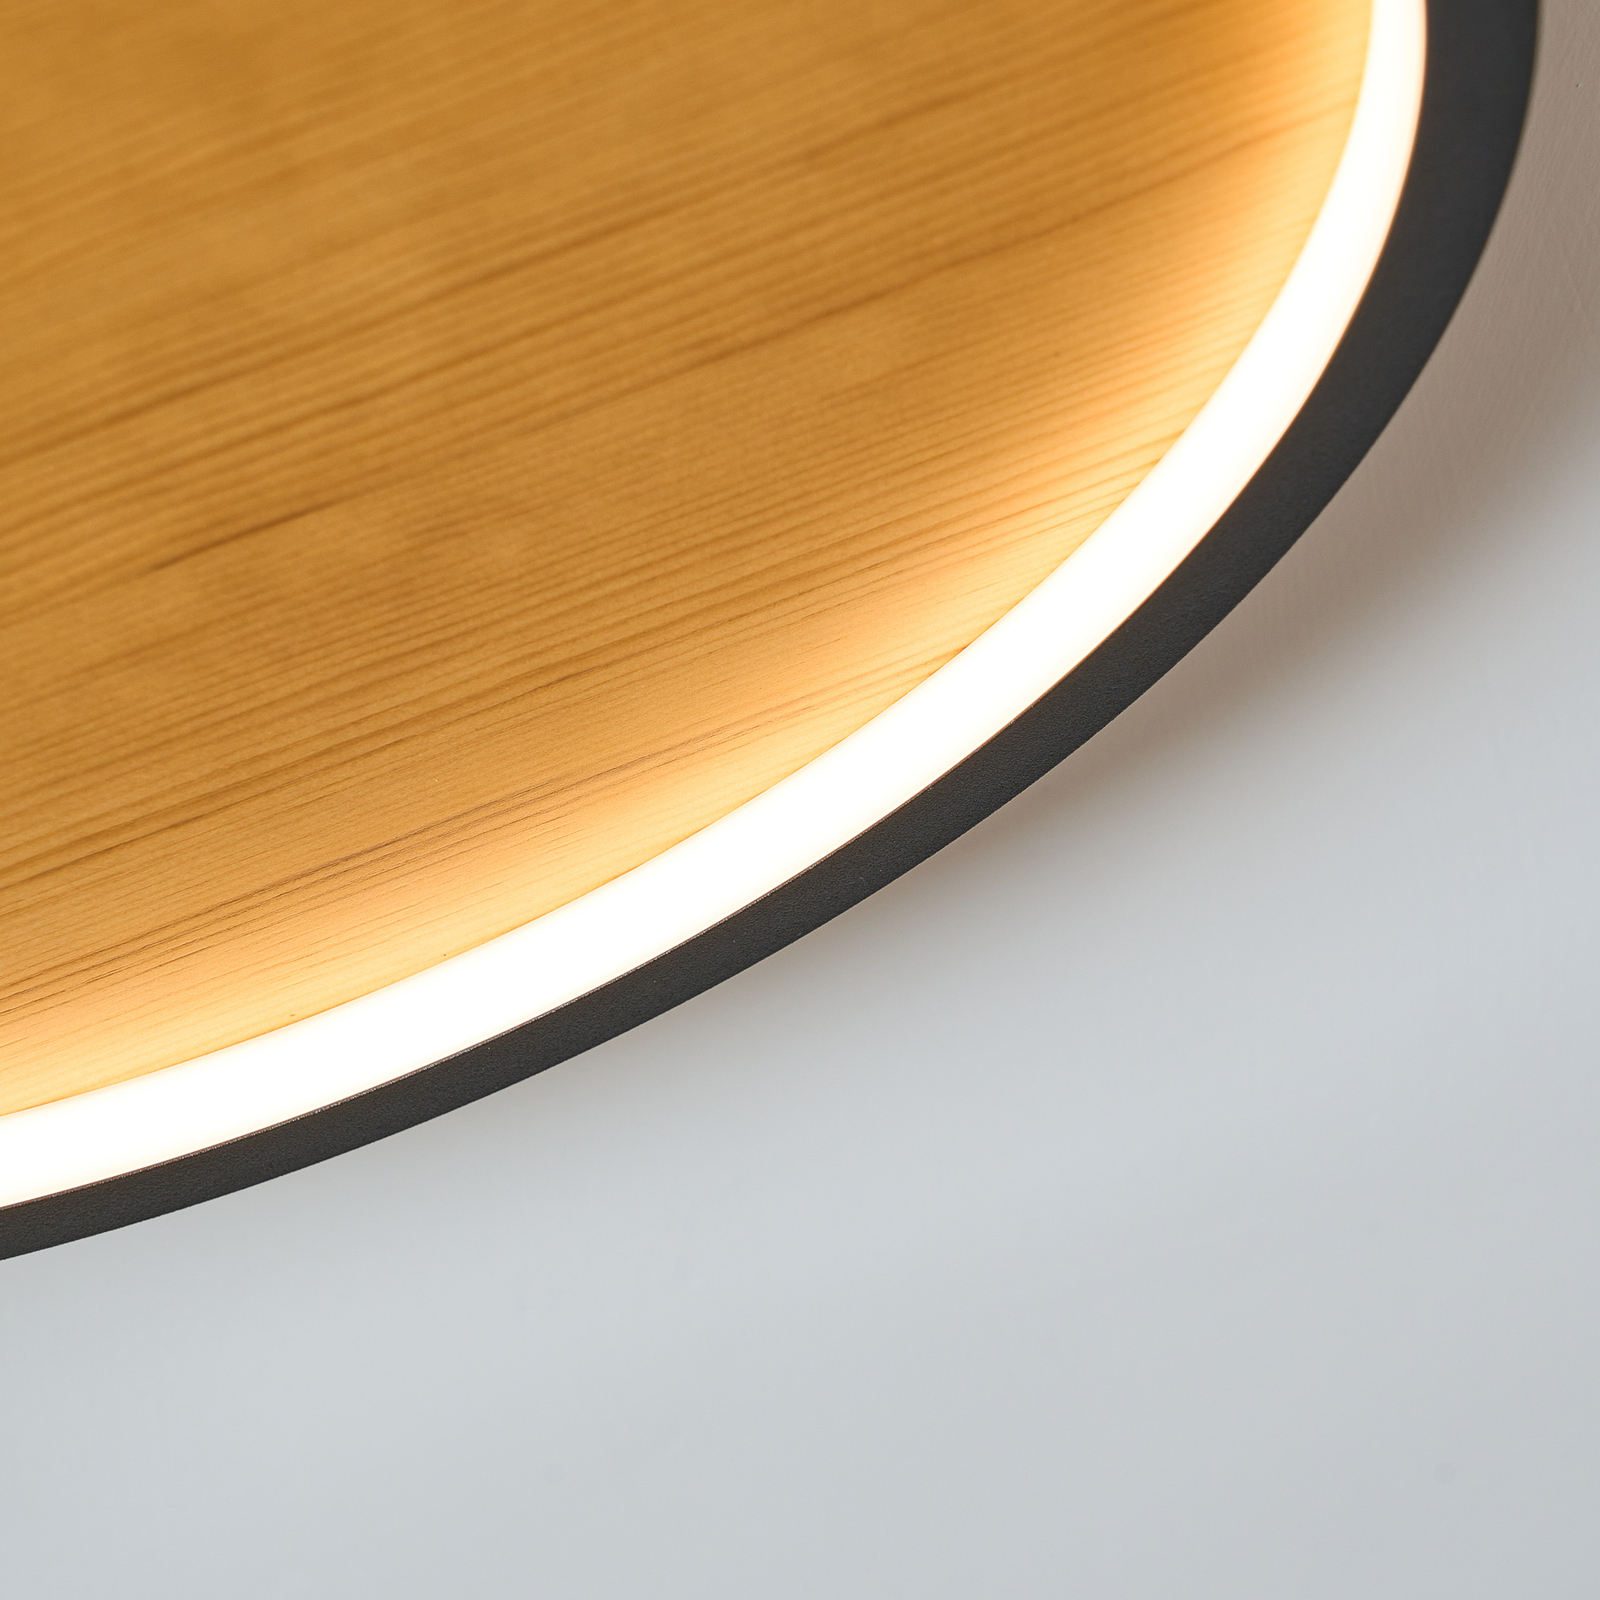 Kiru LED ceiling light, pine, length 63.2 cm, wood